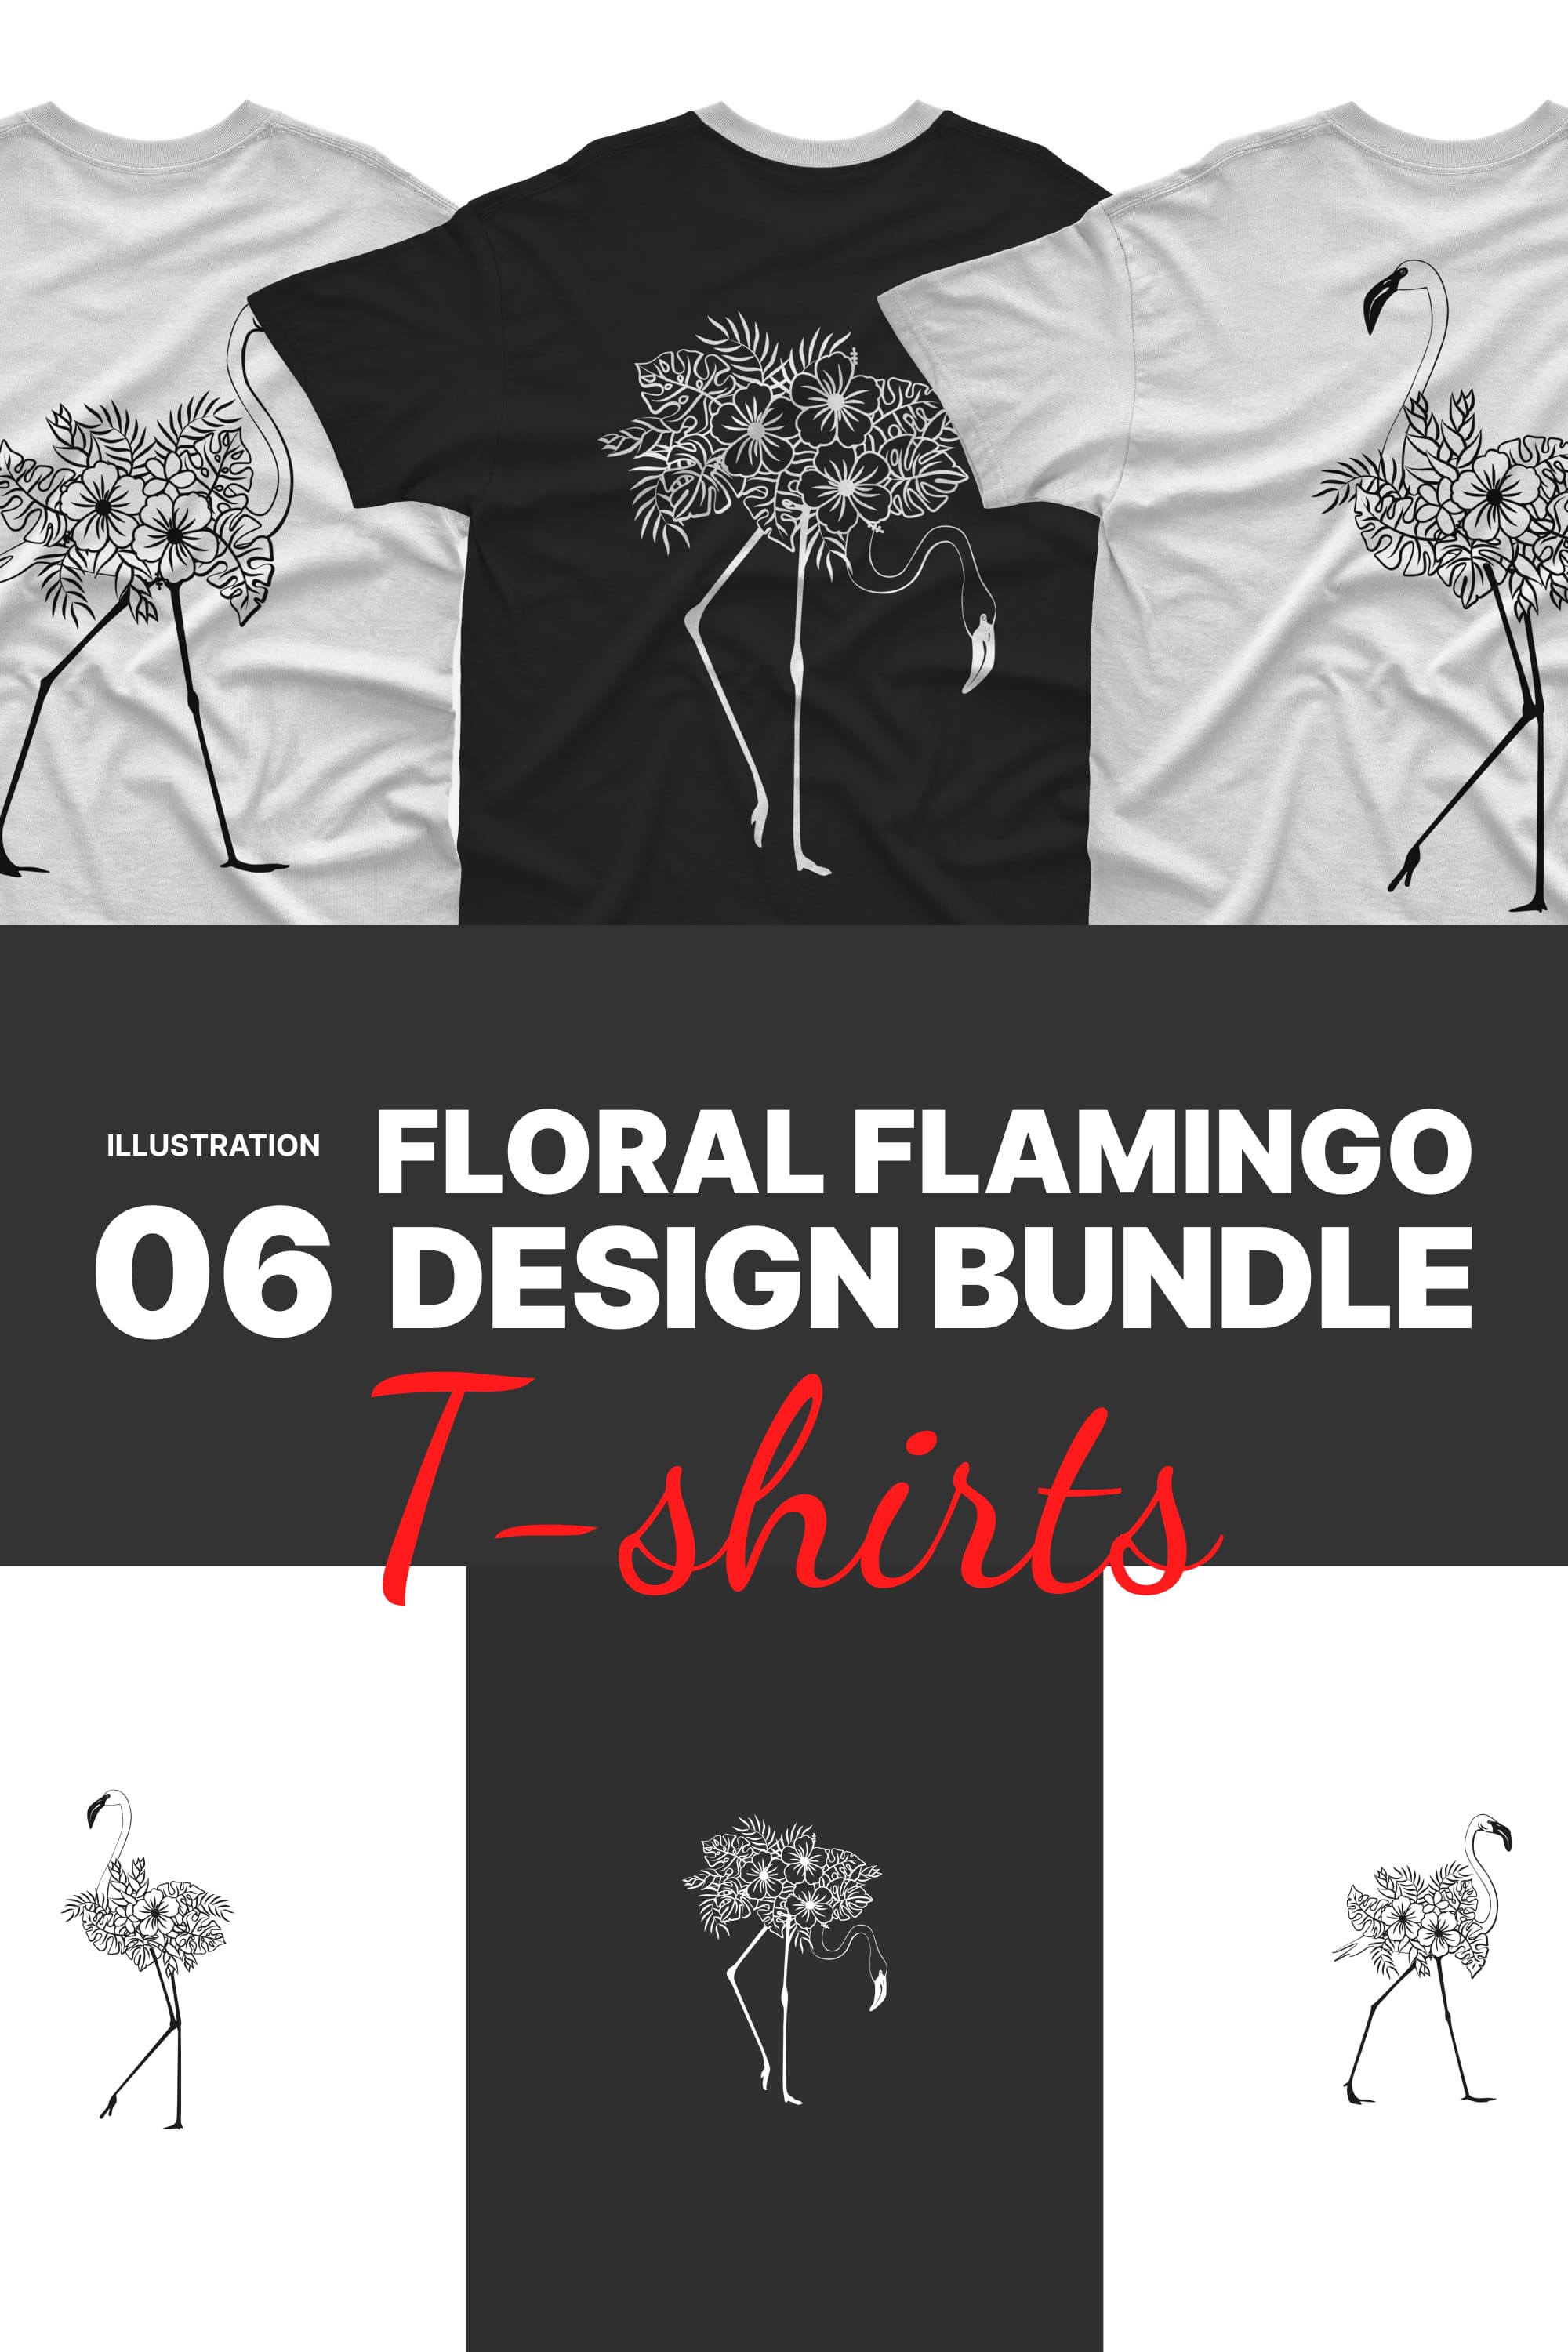 floral flamingo t shirt designs bundle pinterest 689